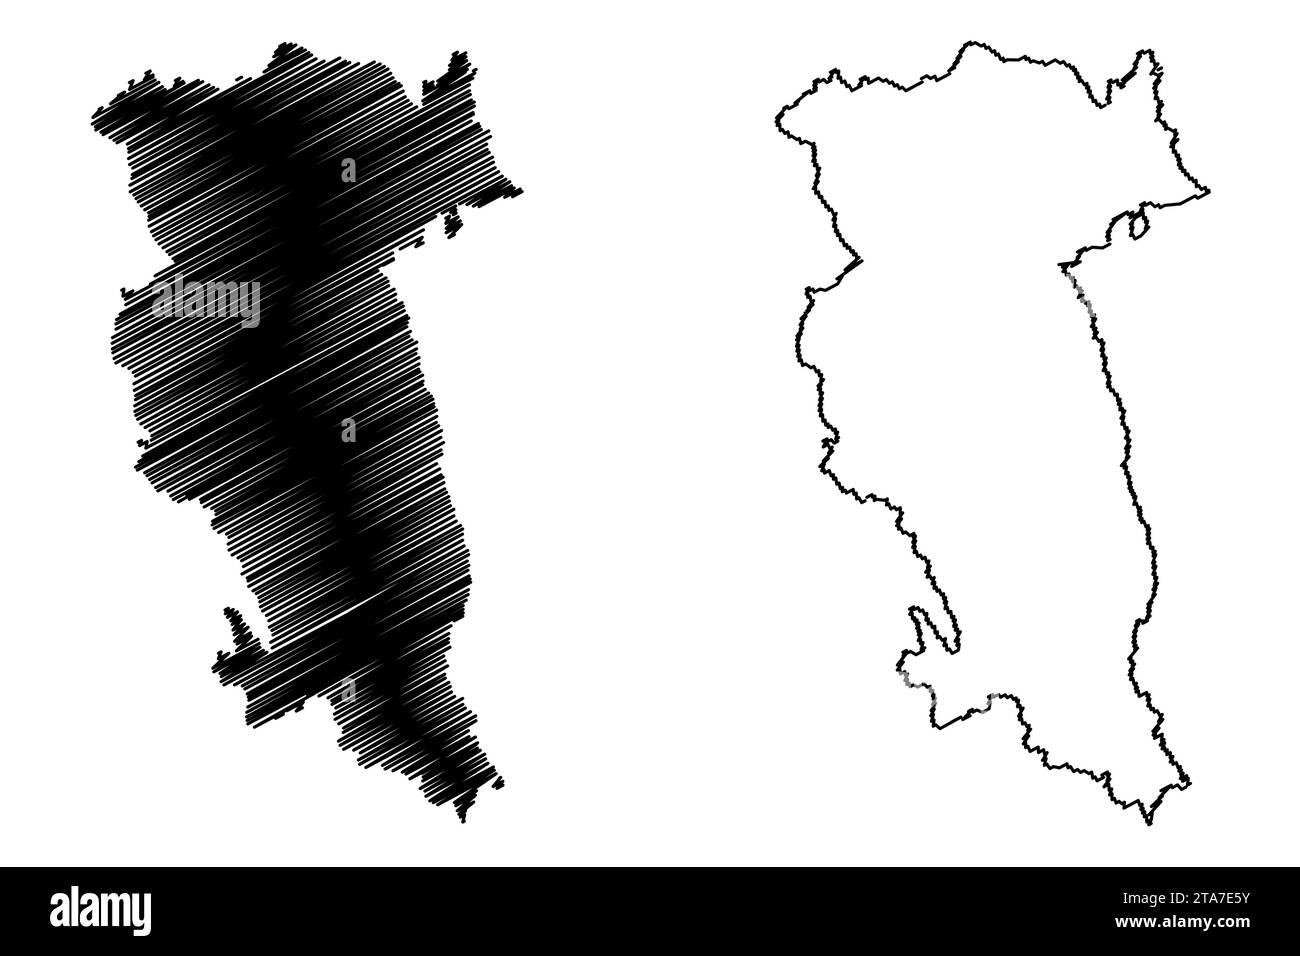 Hartberg-Furstenfeld district (République d'Autriche ou état de Österreich, Styrie, Steiermark ou Štajerska) illustration vectorielle de carte, croquis de griffonnage Bezi Illustration de Vecteur